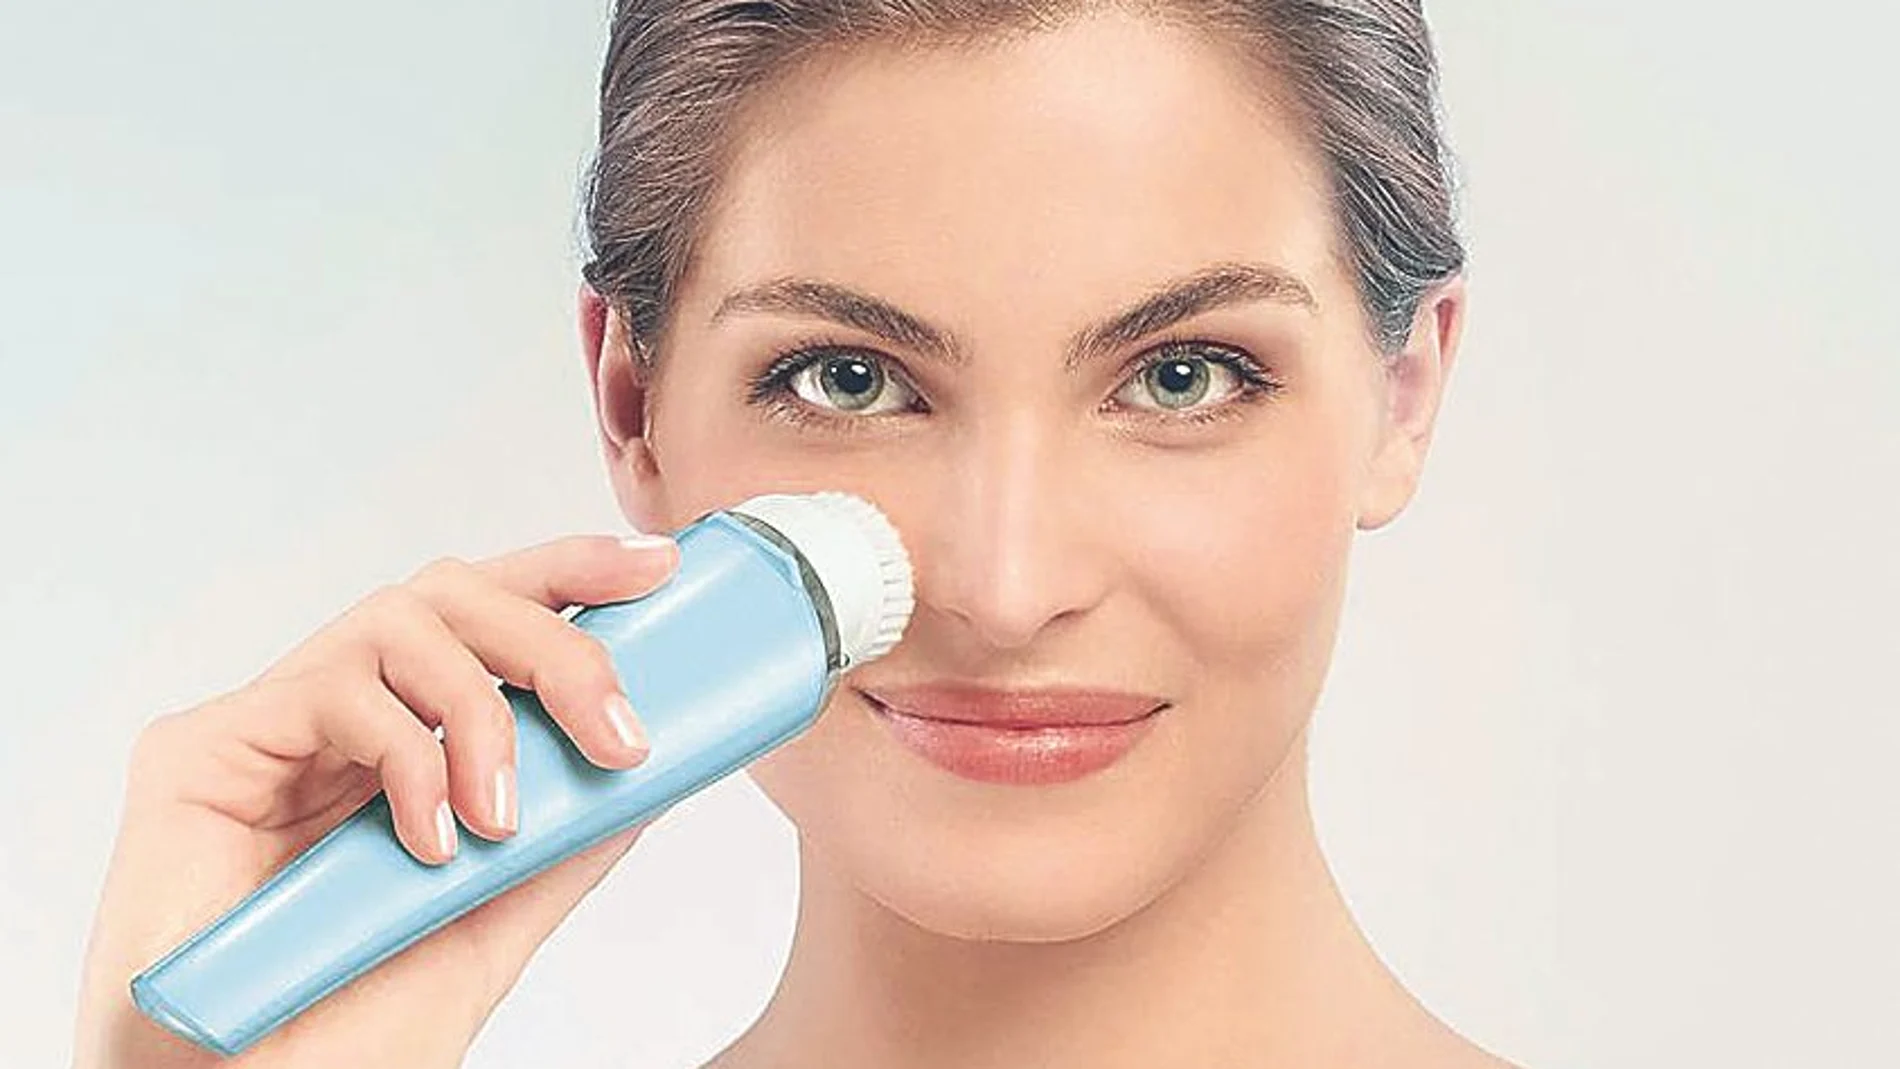 Gracias al efecto de limpieza profunda que ejerce el cepillo de limpieza facial VisaPure de Philips, la piel absorbe mejor los productos para el cuidado de la piel como cremas, sérums y esencias